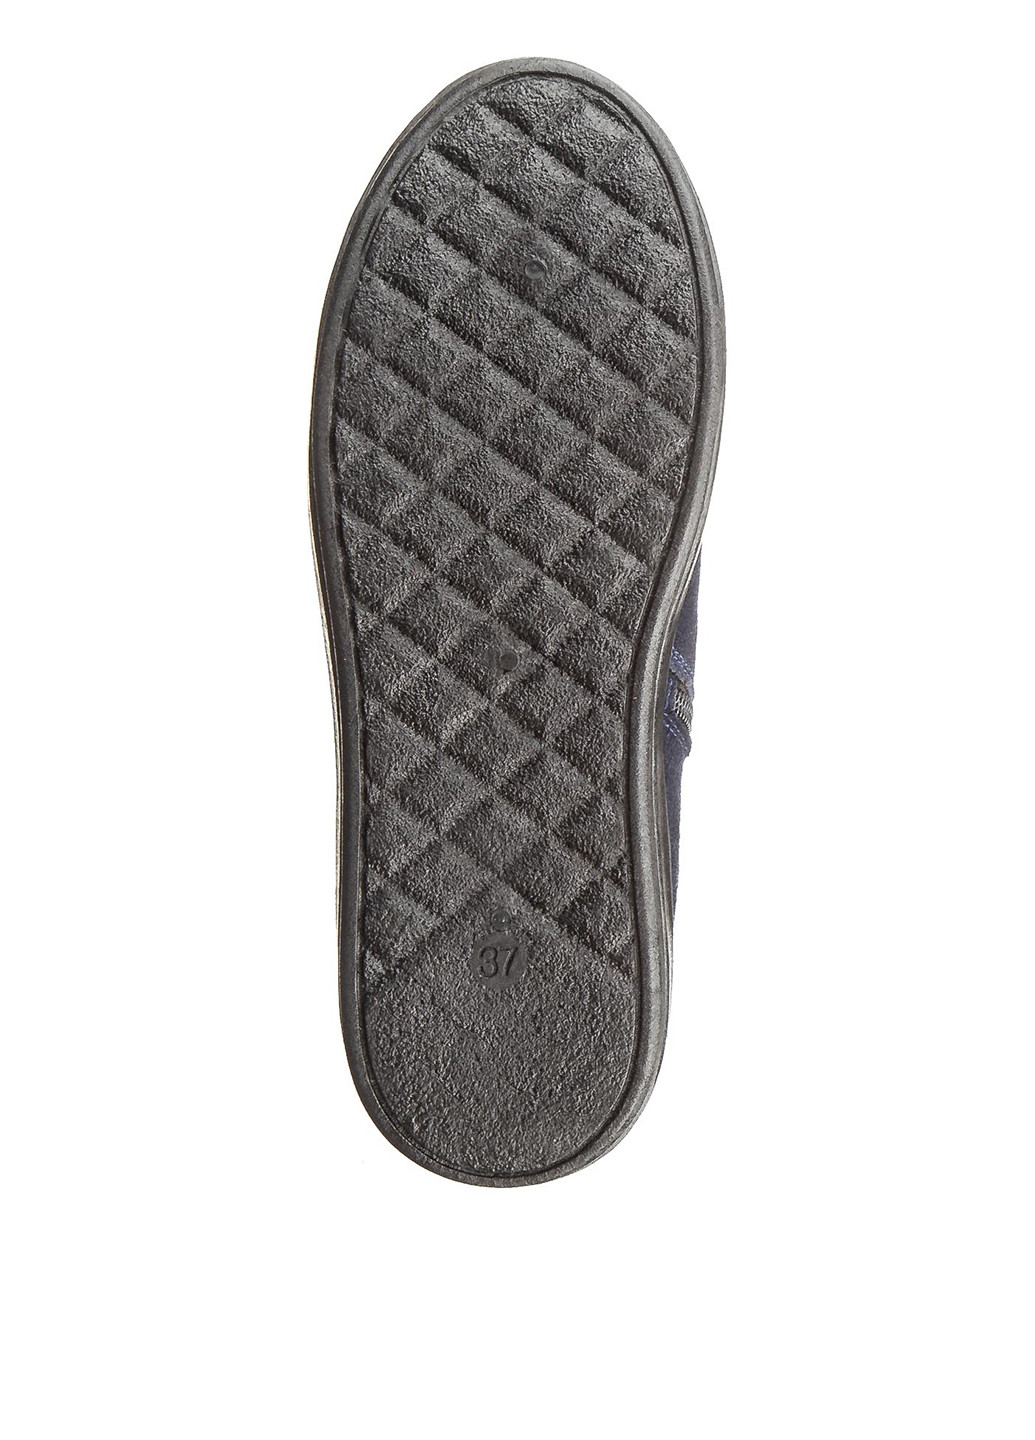 Зимние ботинки Casual без декора из натурального велюра